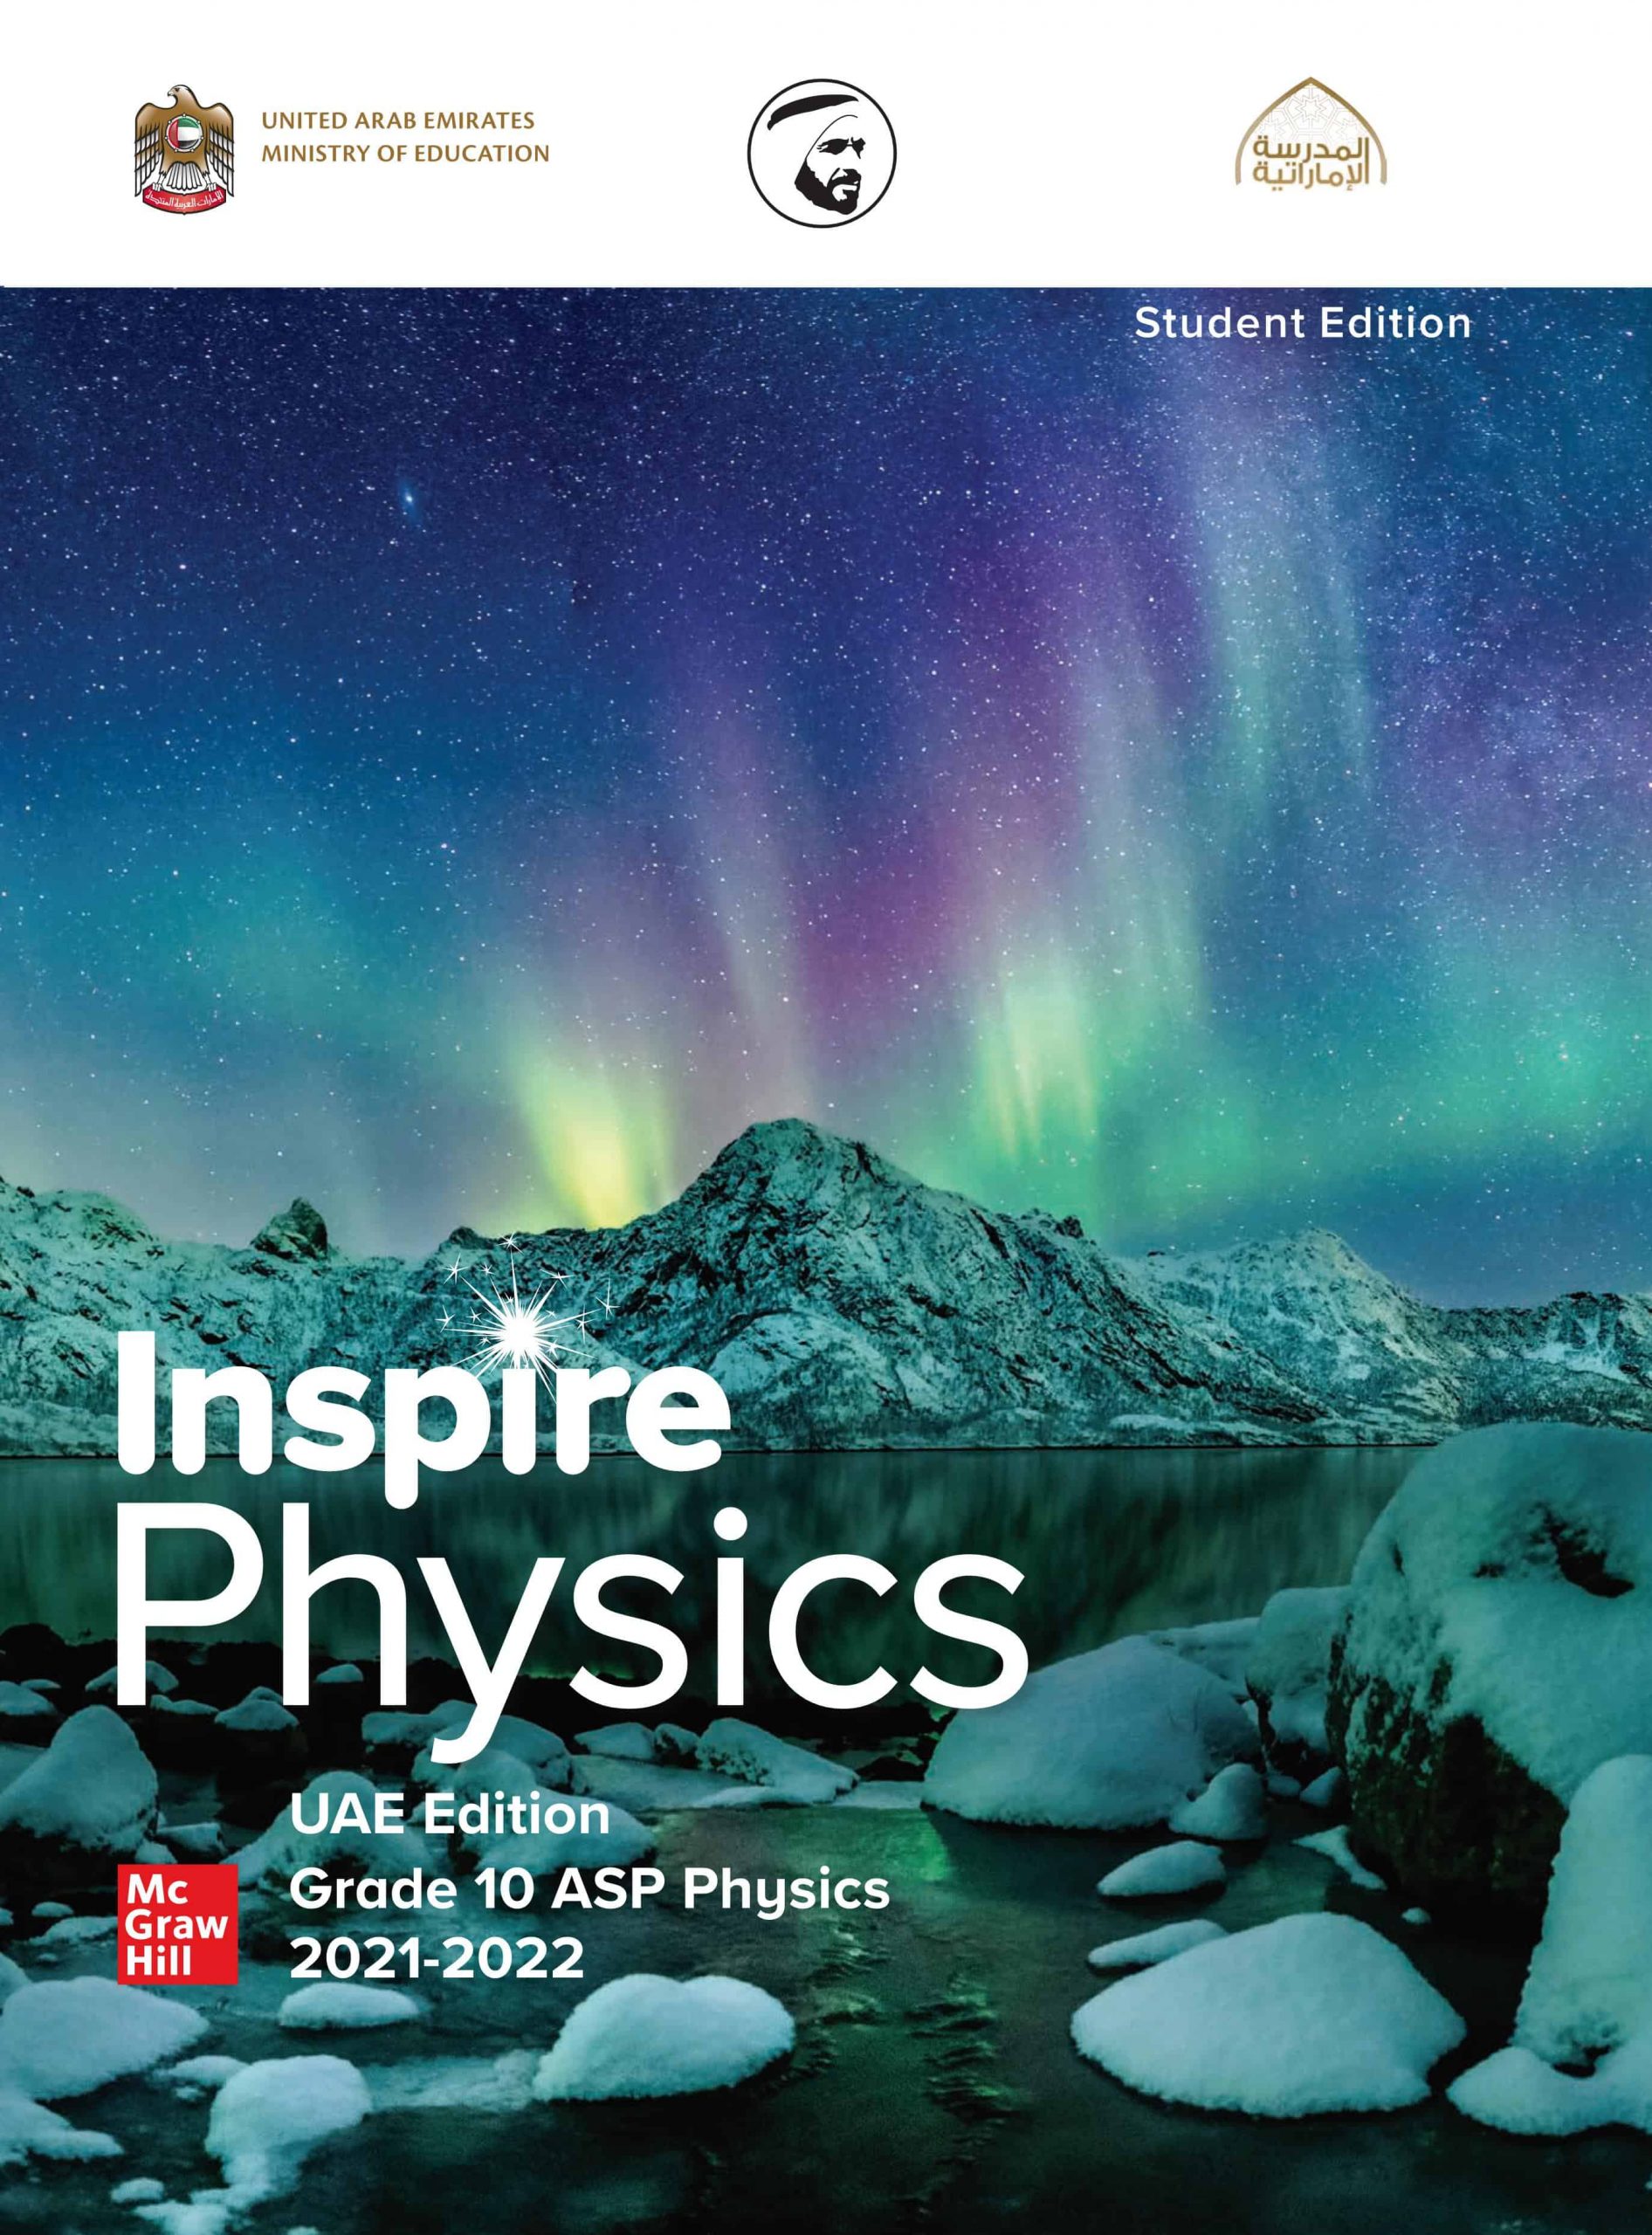 كتاب الطالب المجلد الأول الفيزياء بالإنجليزي الصف العاشر الفصل الدراسي الأول 2021-2022